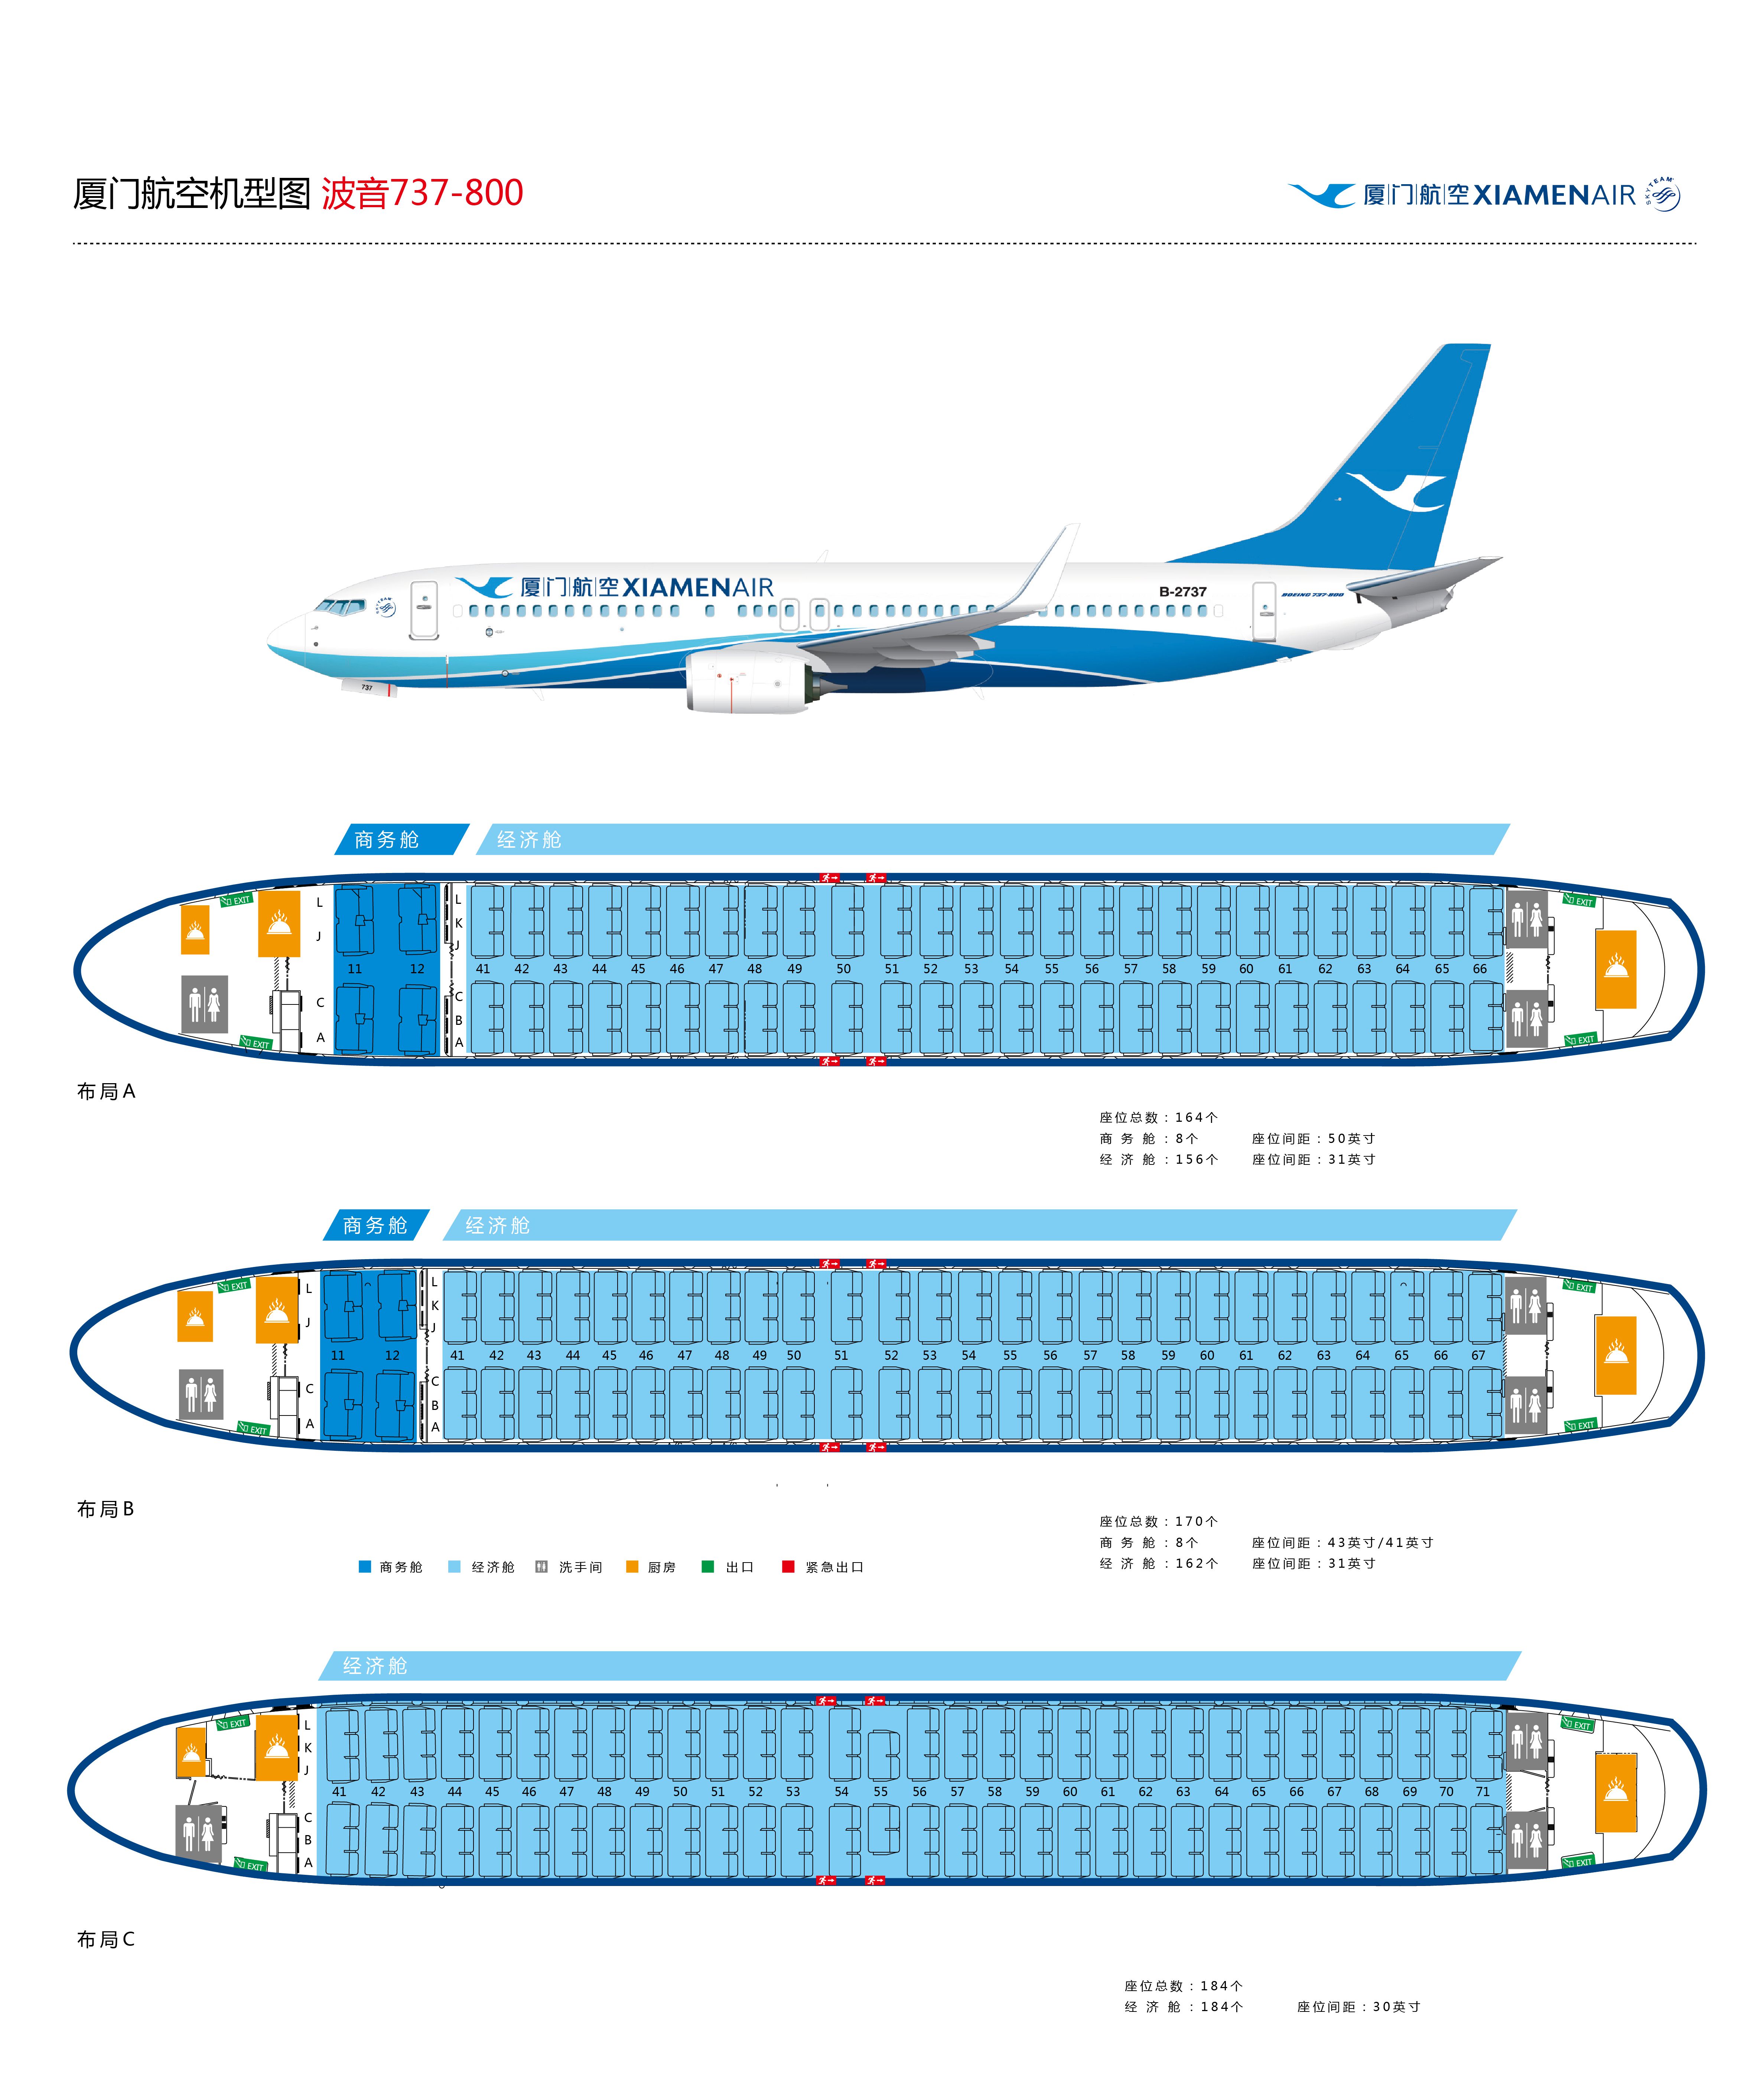 Boeing 737 800 схема кресел